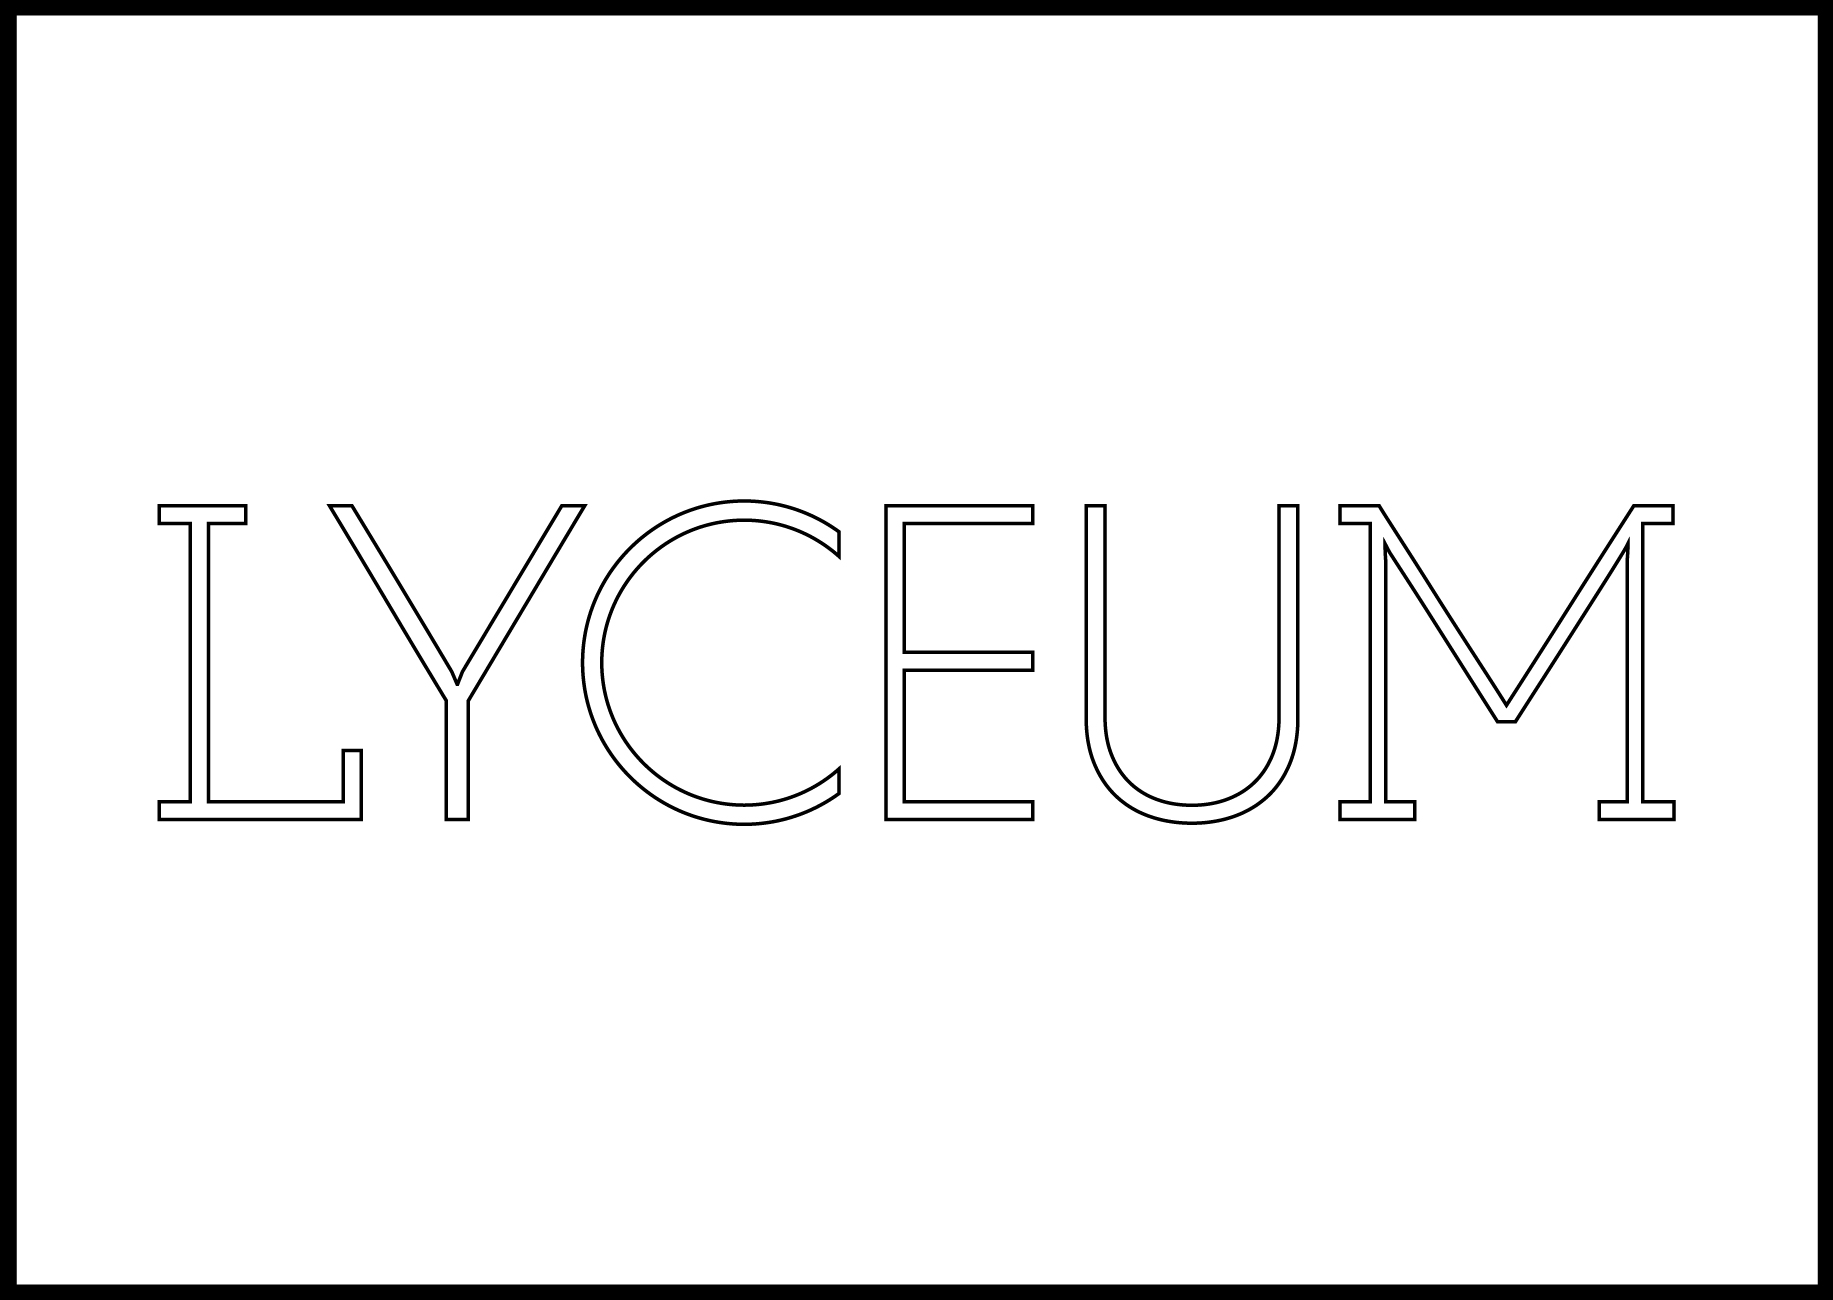 Lyceum Fellowship